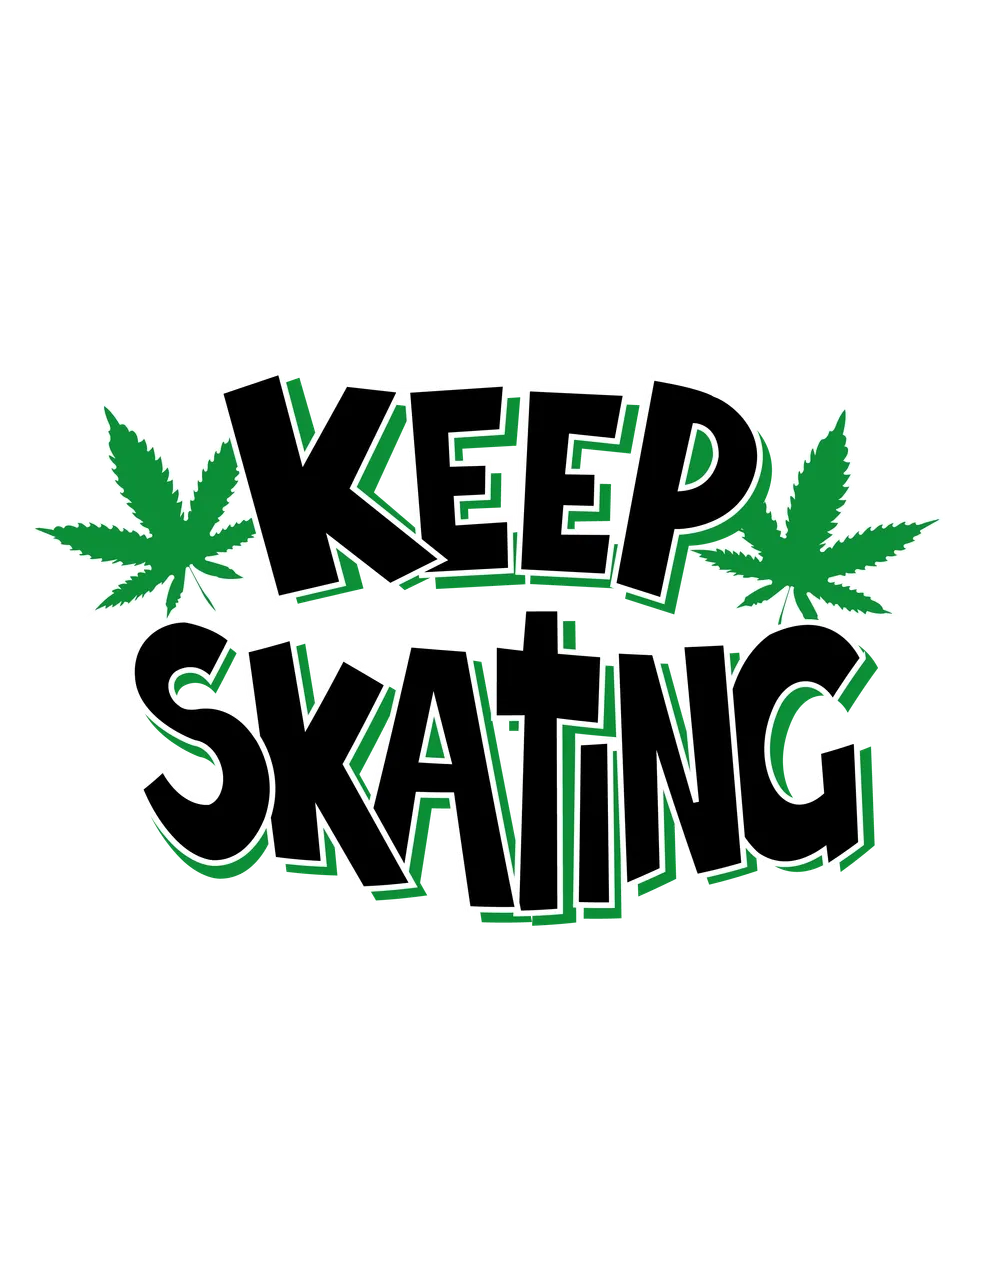 Keep Skating Logo V 4.2.0